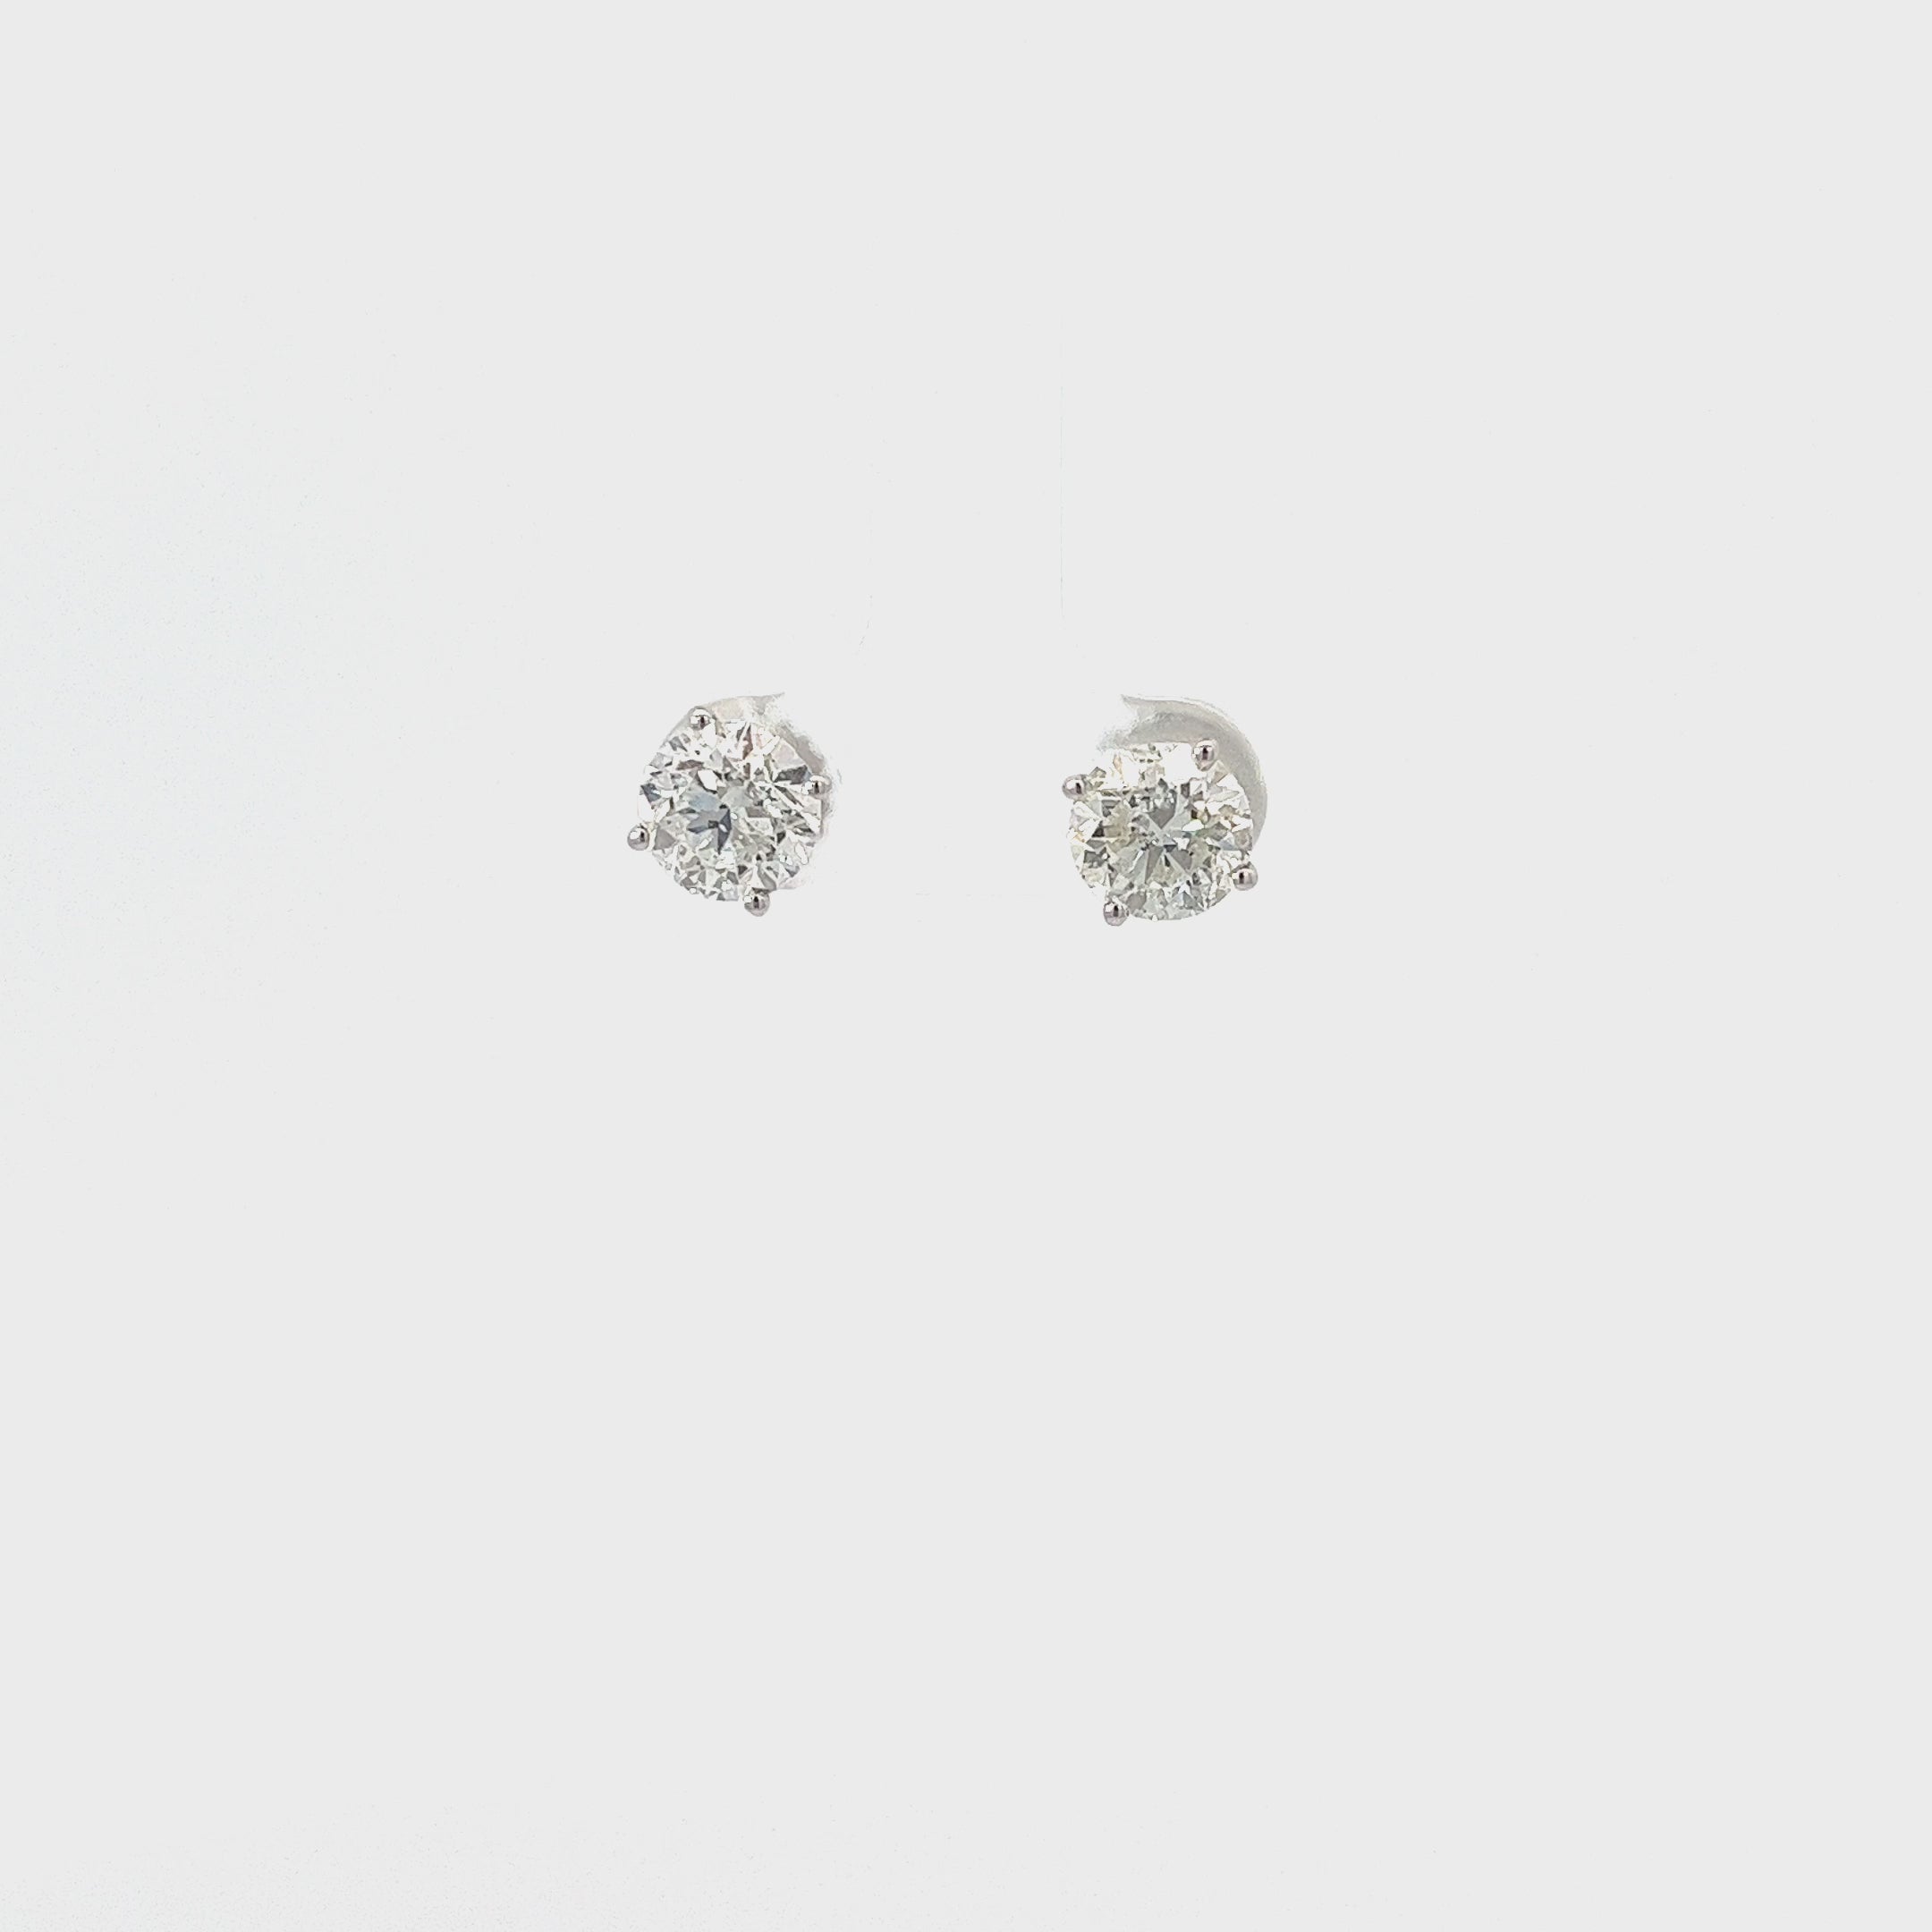 Ladies 14k white gold Diamond Stud Earrings